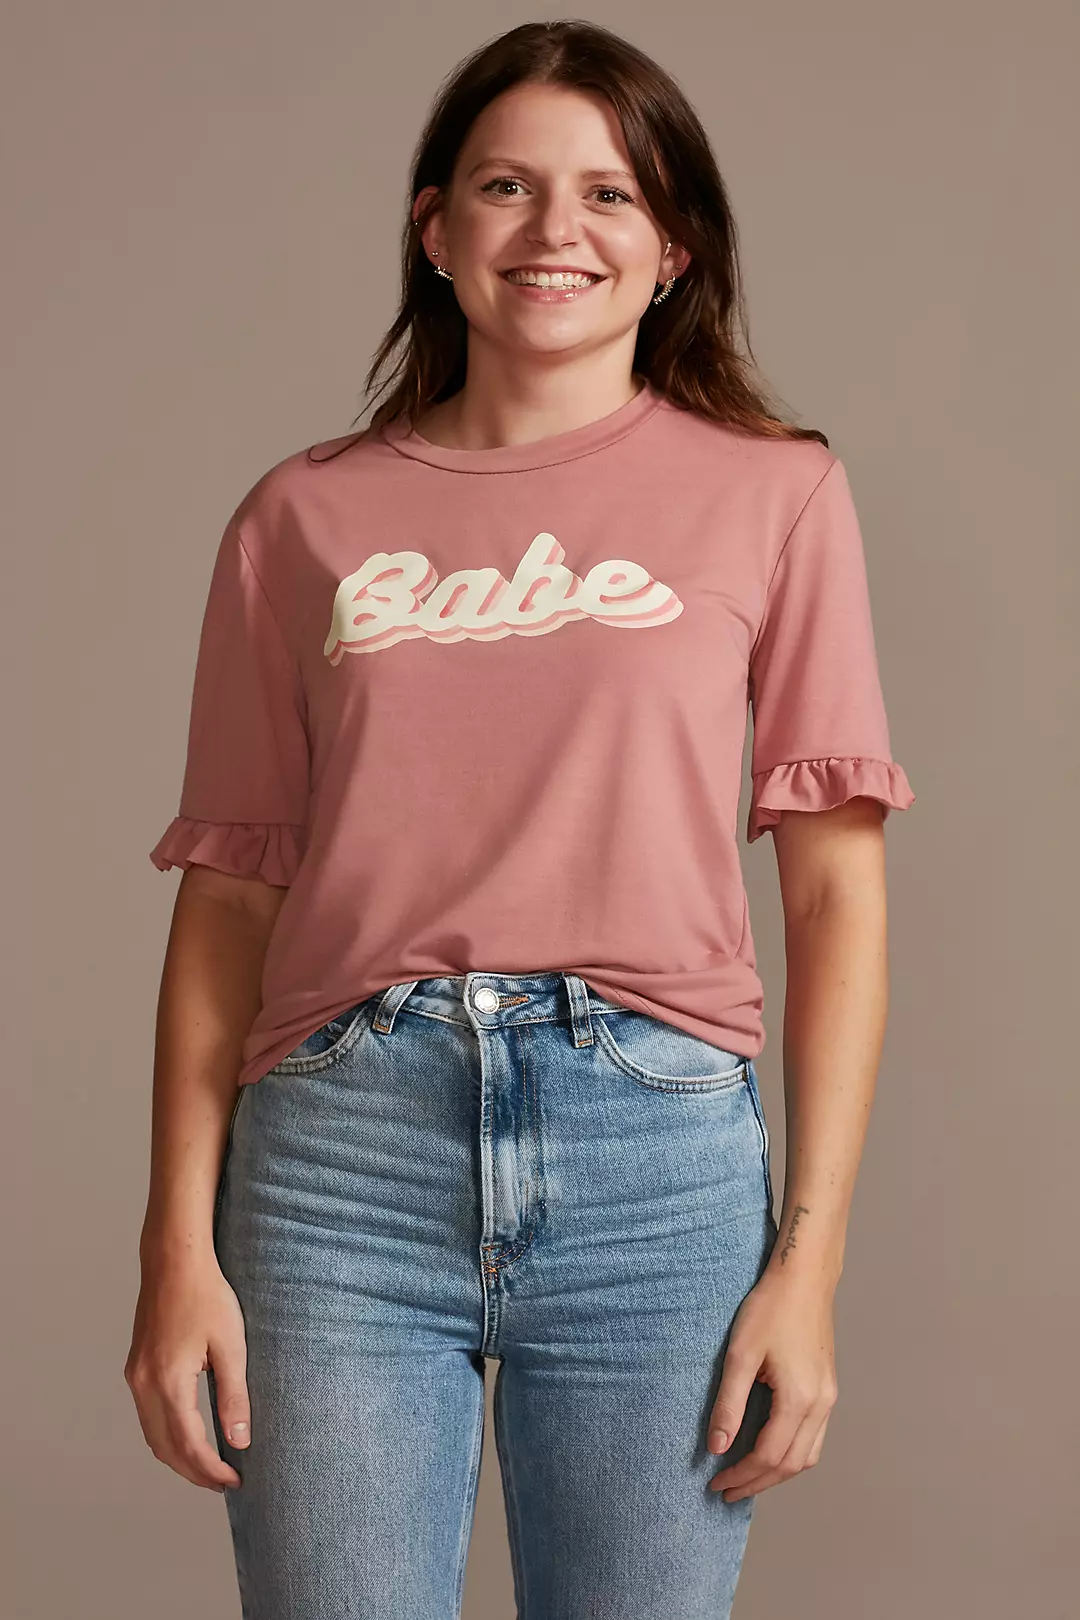 Ruffled Retro Babe T-Shirt Image